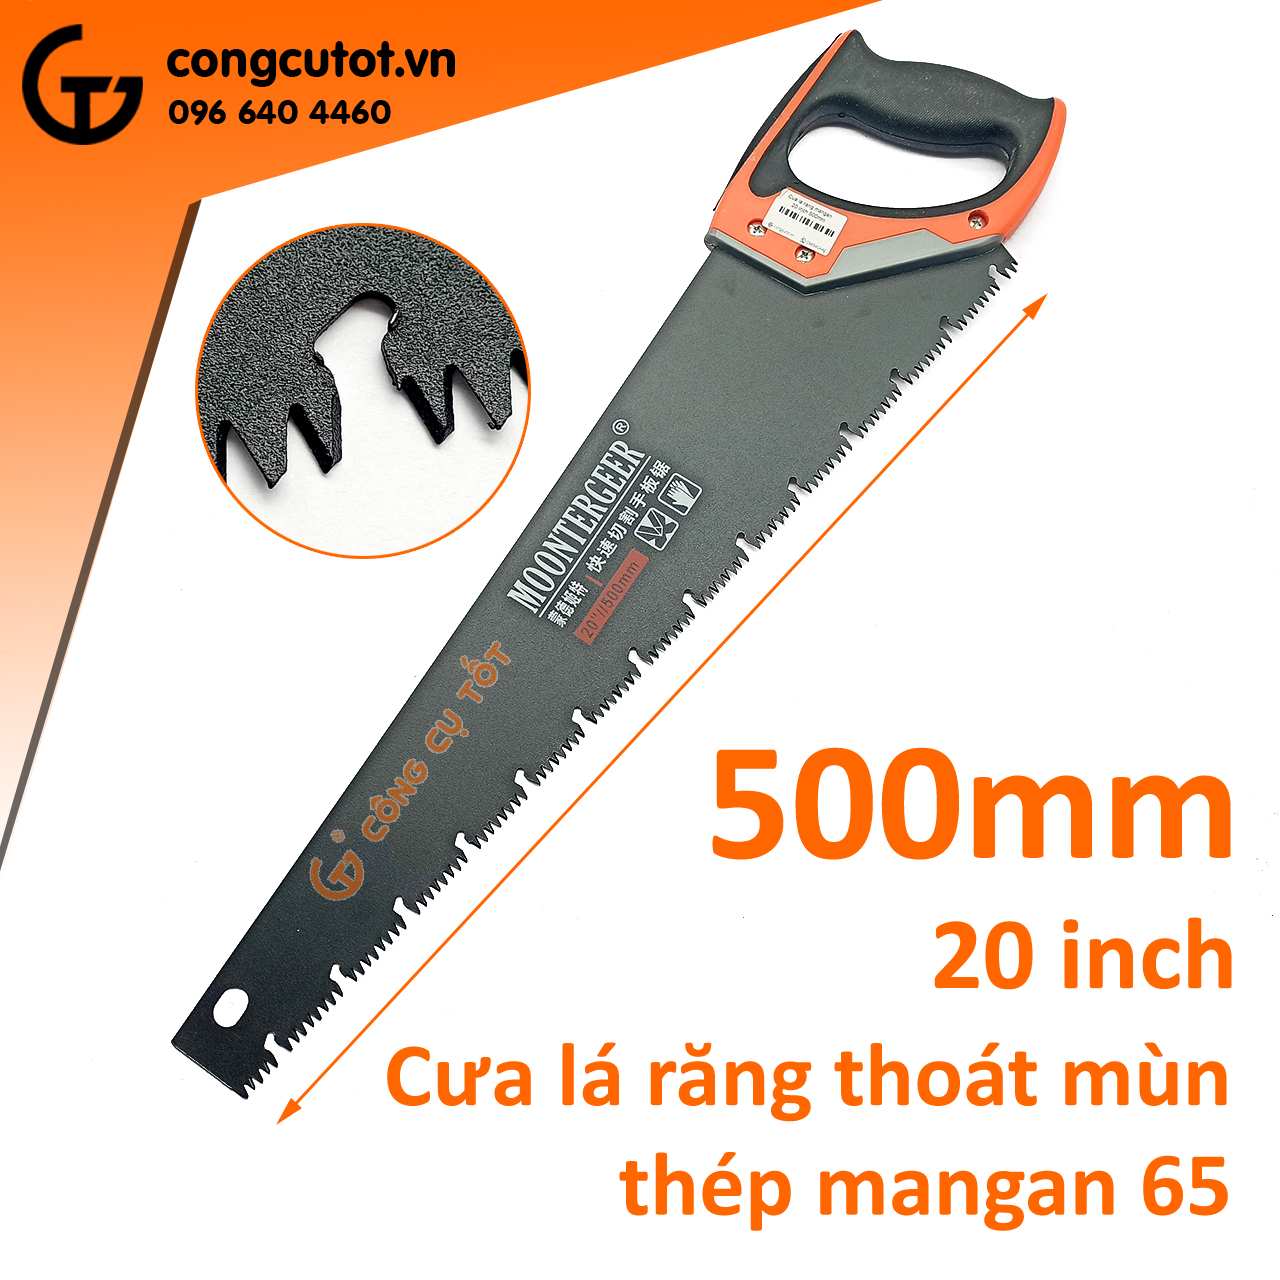 Cưa lá răng thoát mùn bằng thép mangan MN65 dài 20 inch 500mm